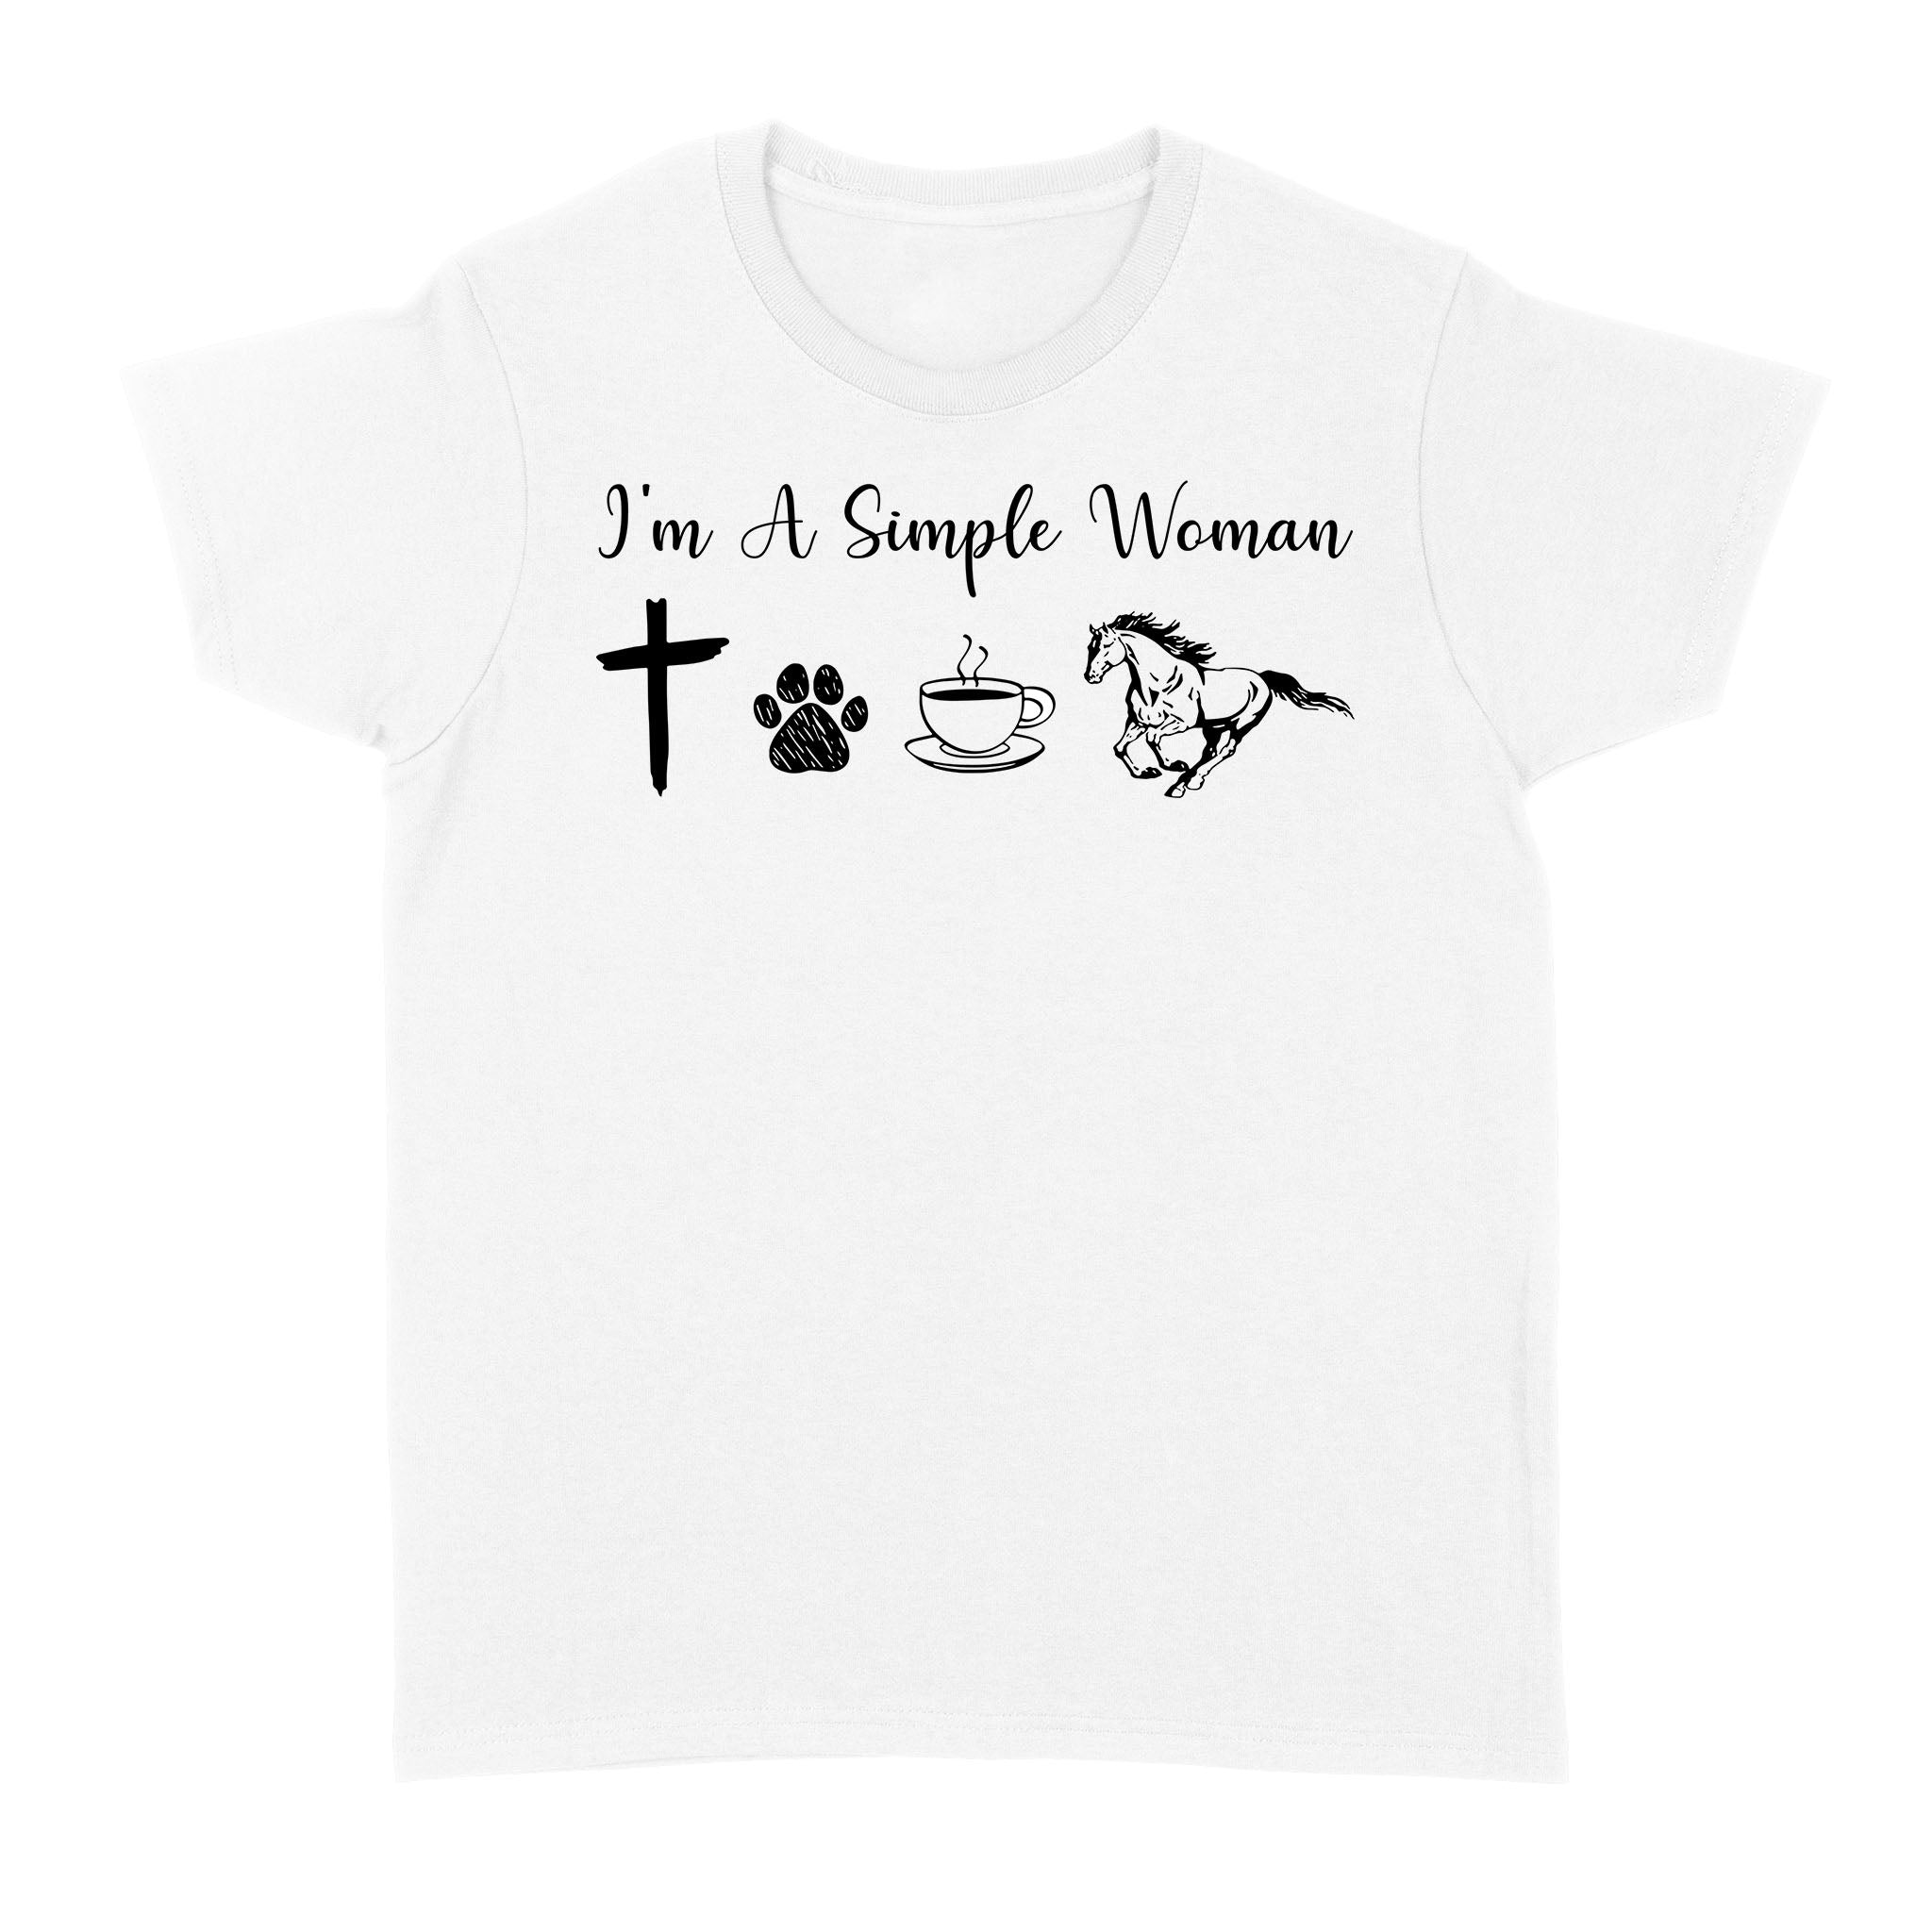 I am a simple women dog, coffee, horse shirt, horse girl shirt D06 NQS1674 - Standard Women's T-shirt